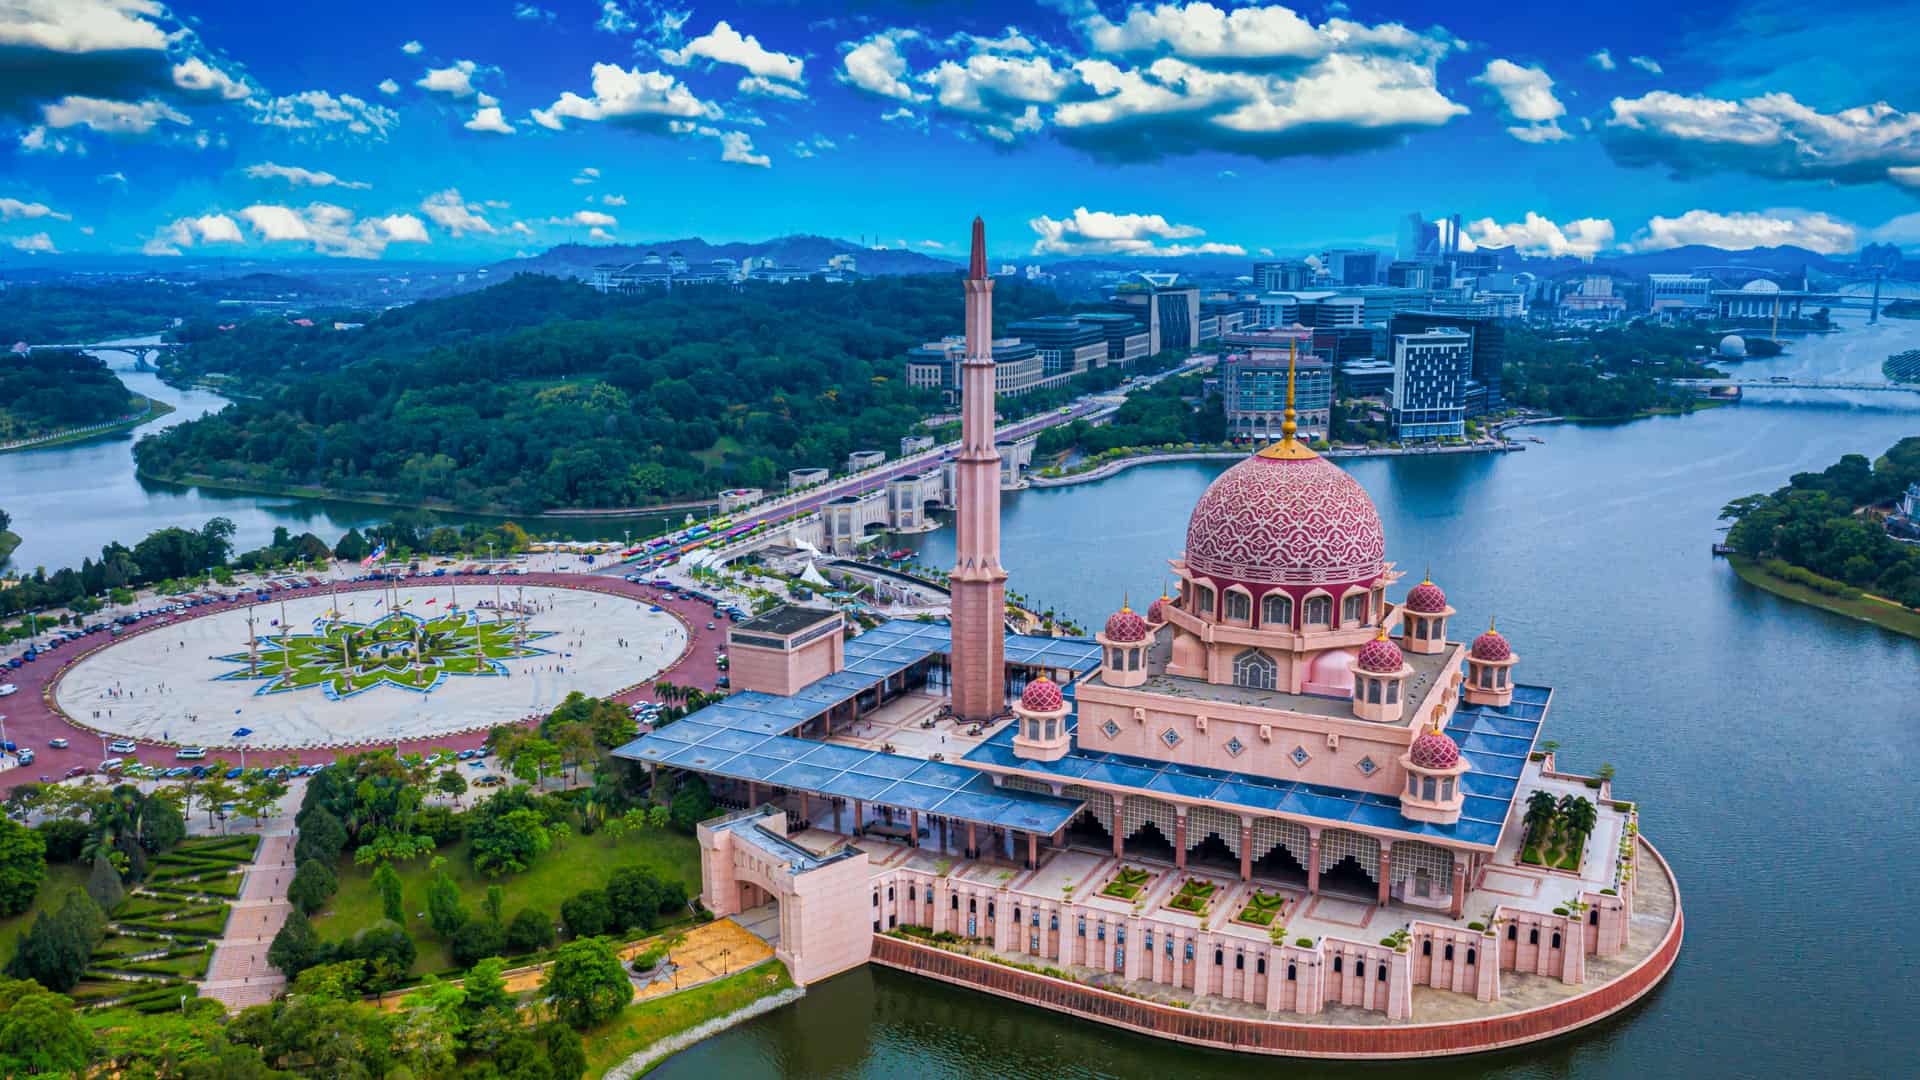 Vista aérea de la Mezquita de Putra con el centro de la ciudad de Putrajaya en Malasia donde se puede contratar un seguro de viaje